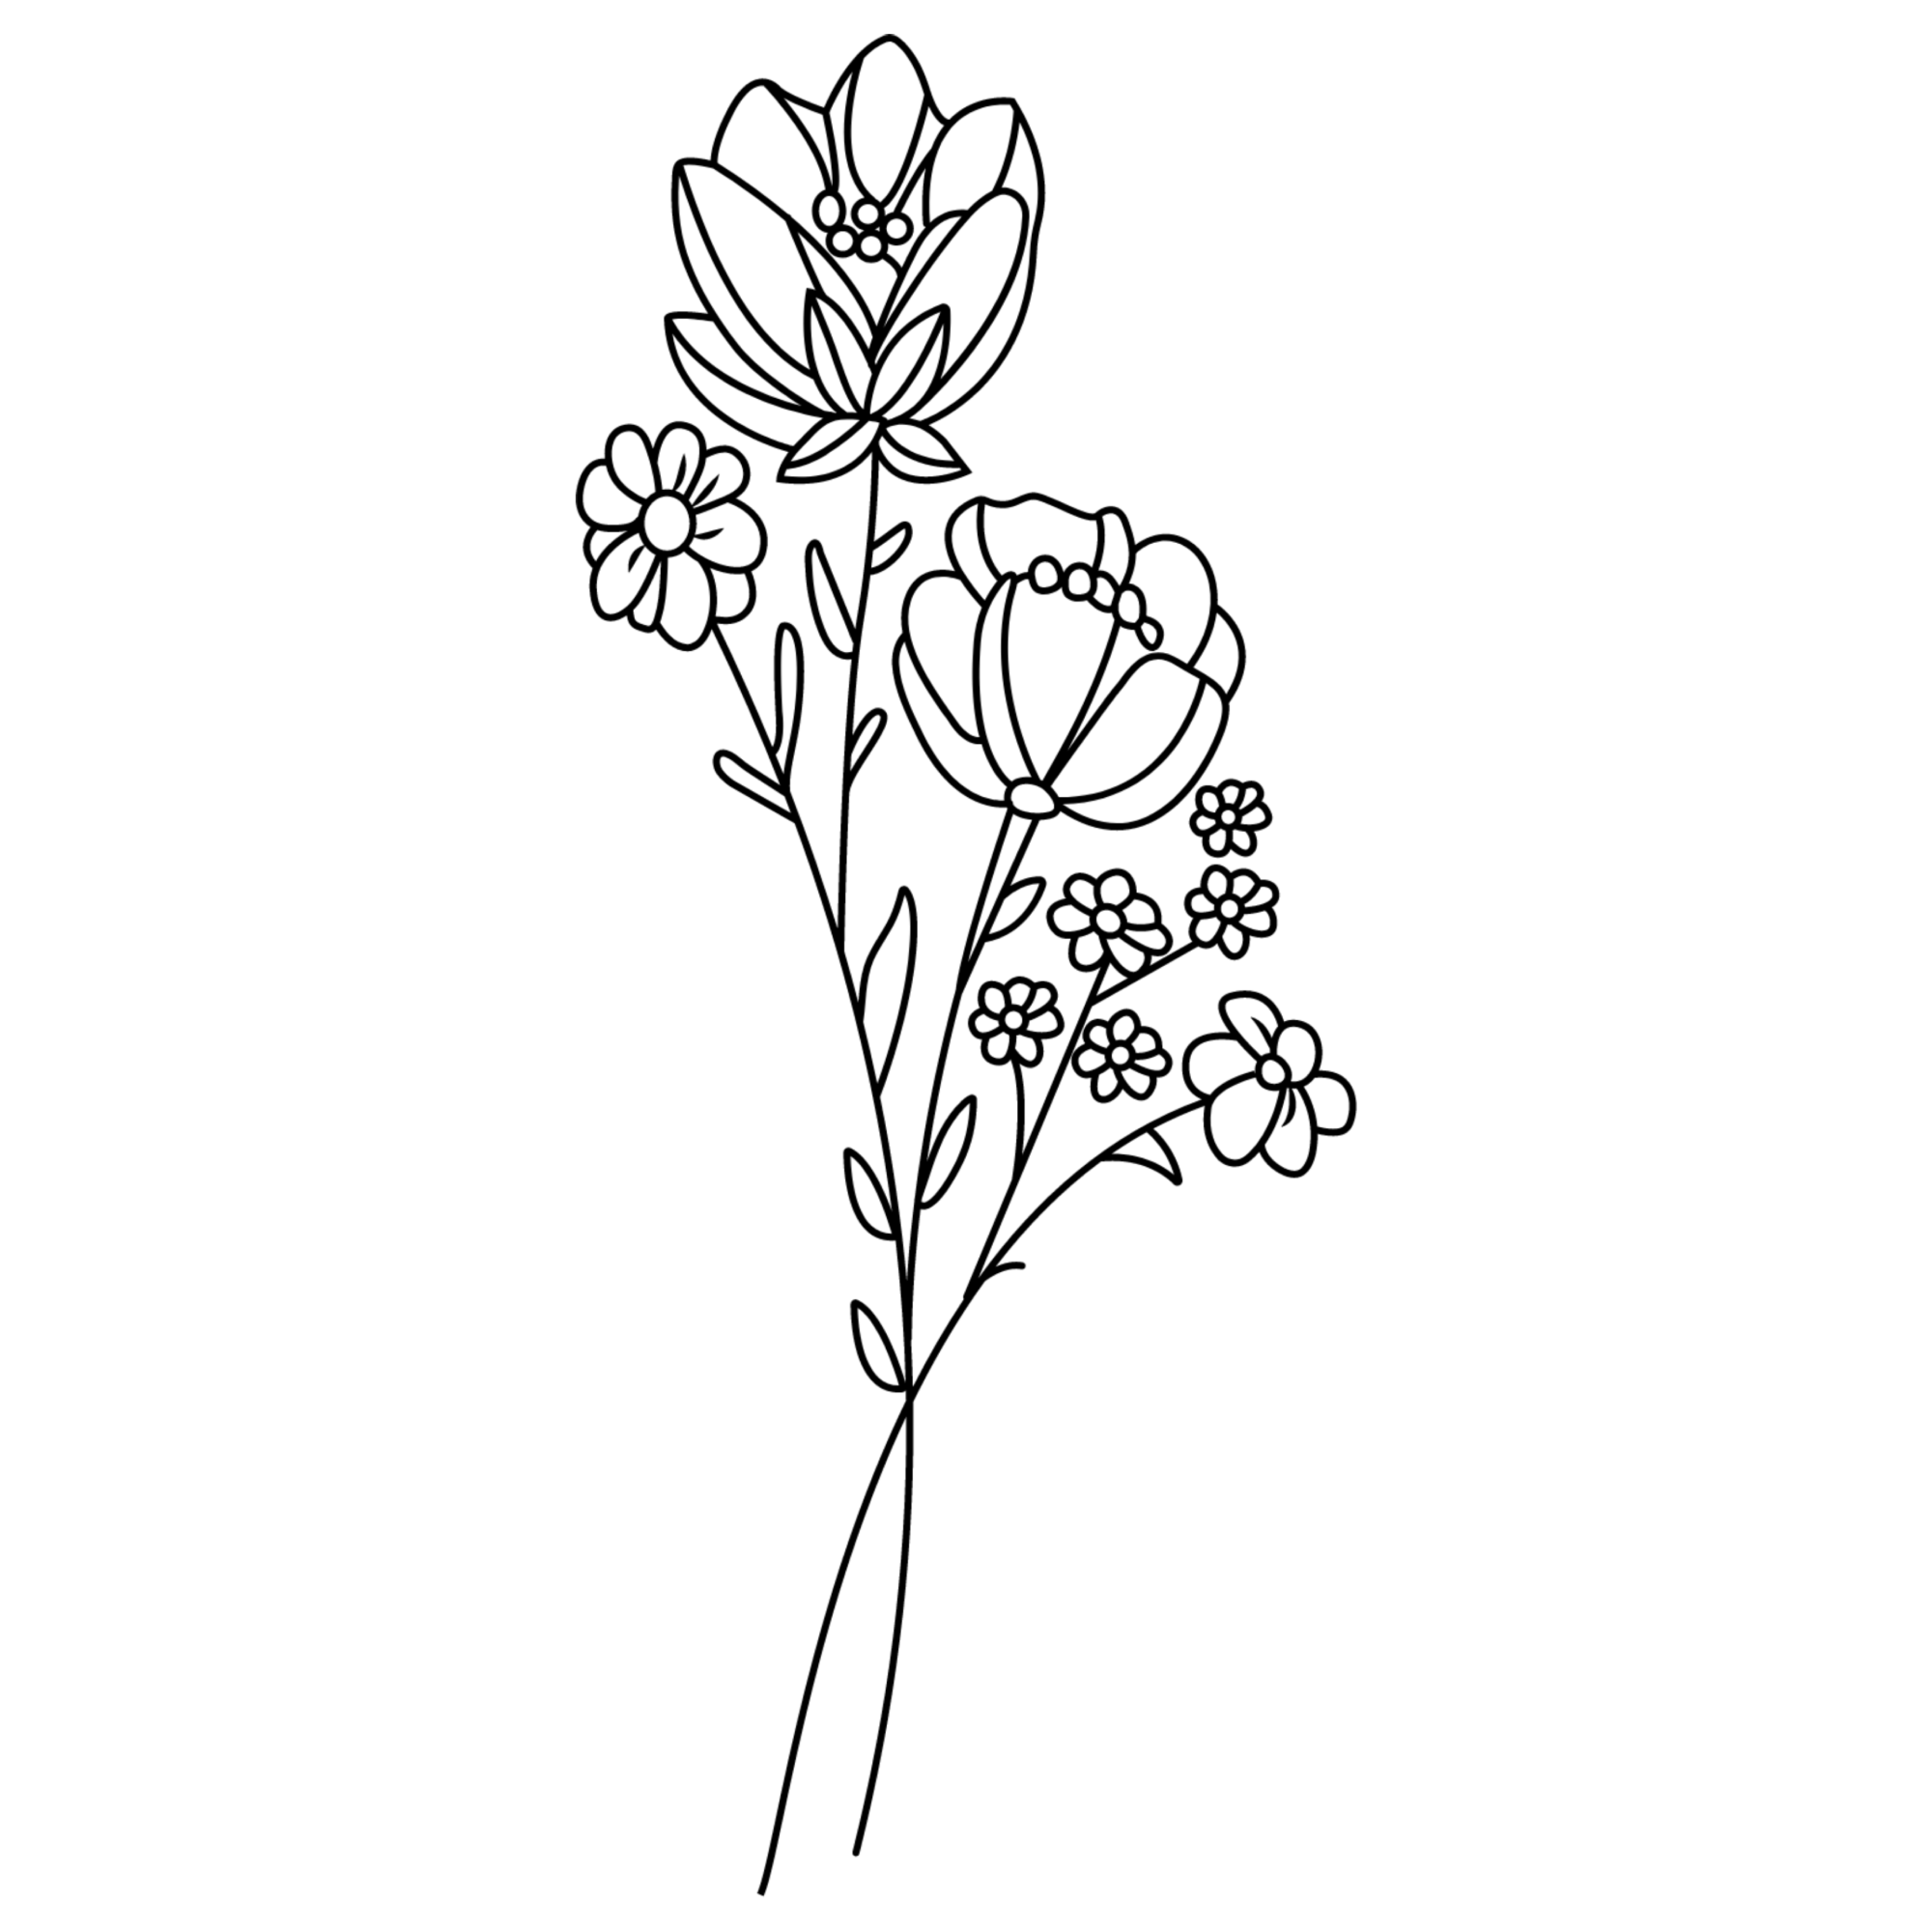 Bouquet